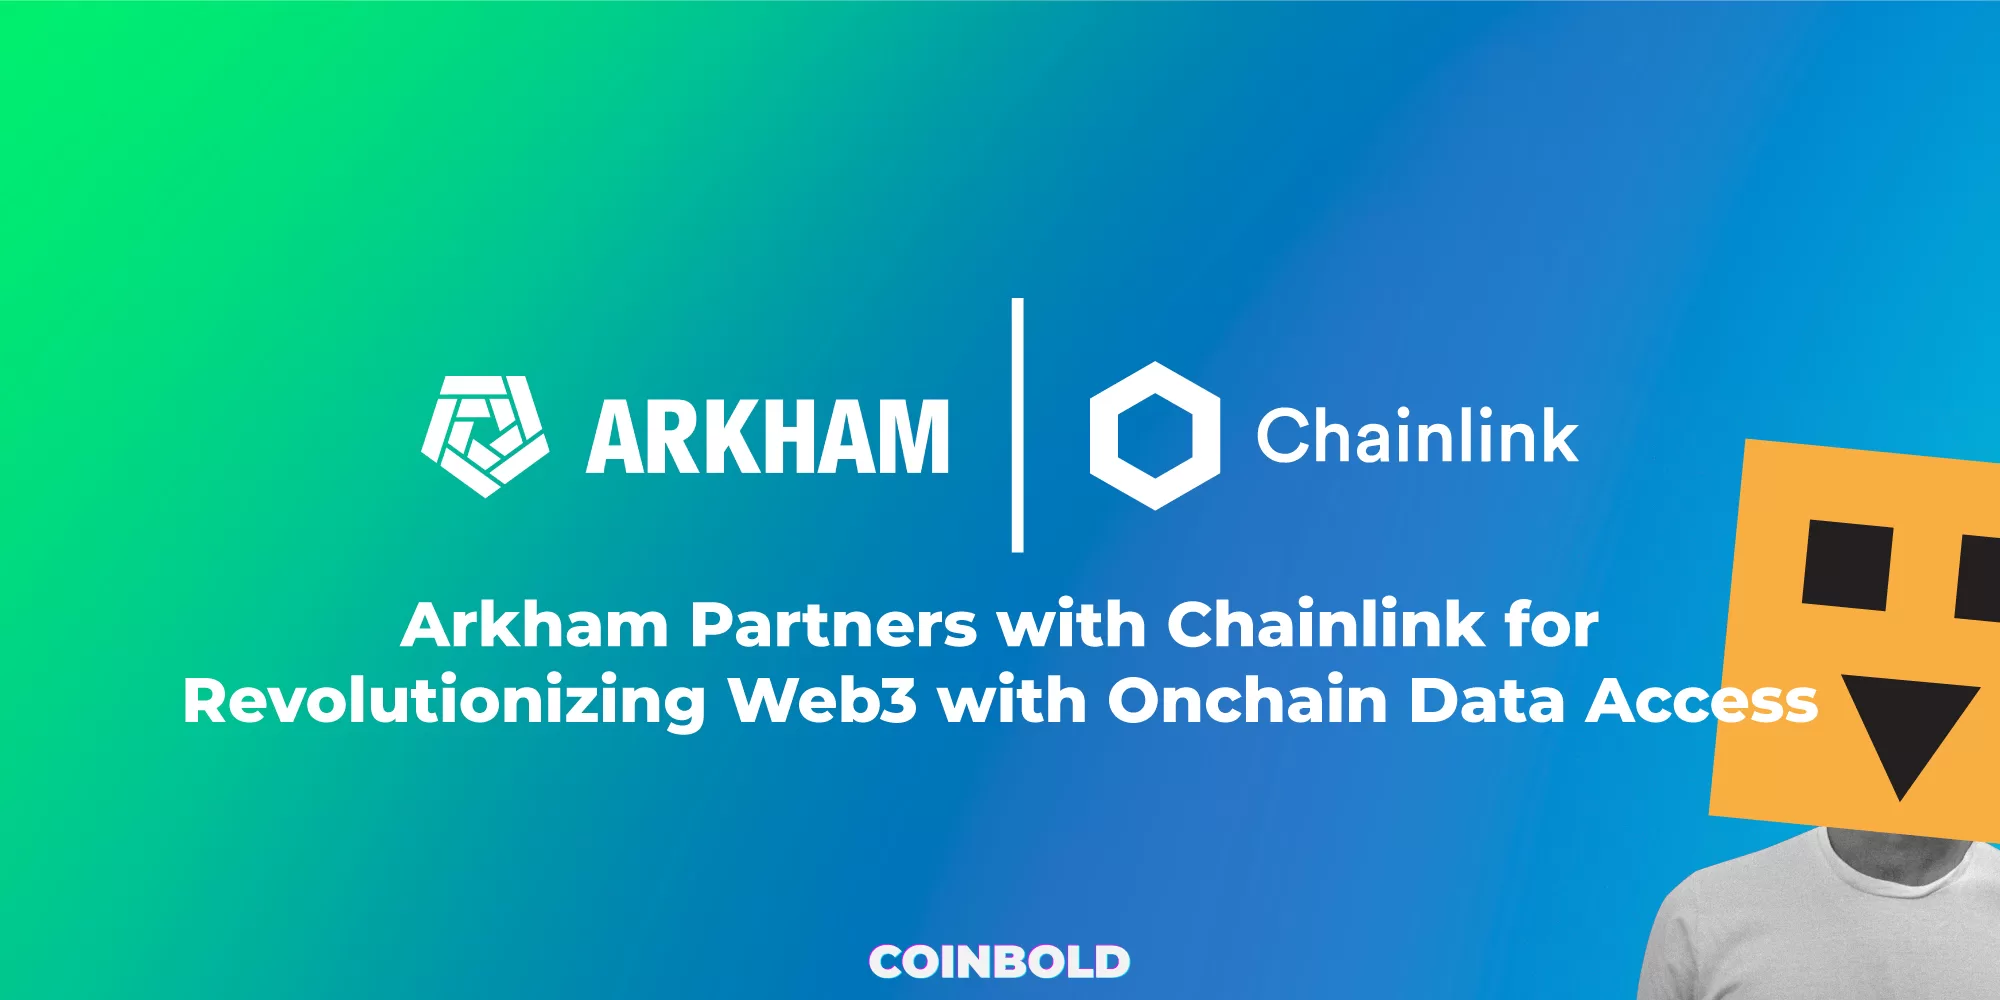 Arkham hợp tác với Chainlink để cách mạng hóa Web3 với quyền truy cập dữ liệu Onchain